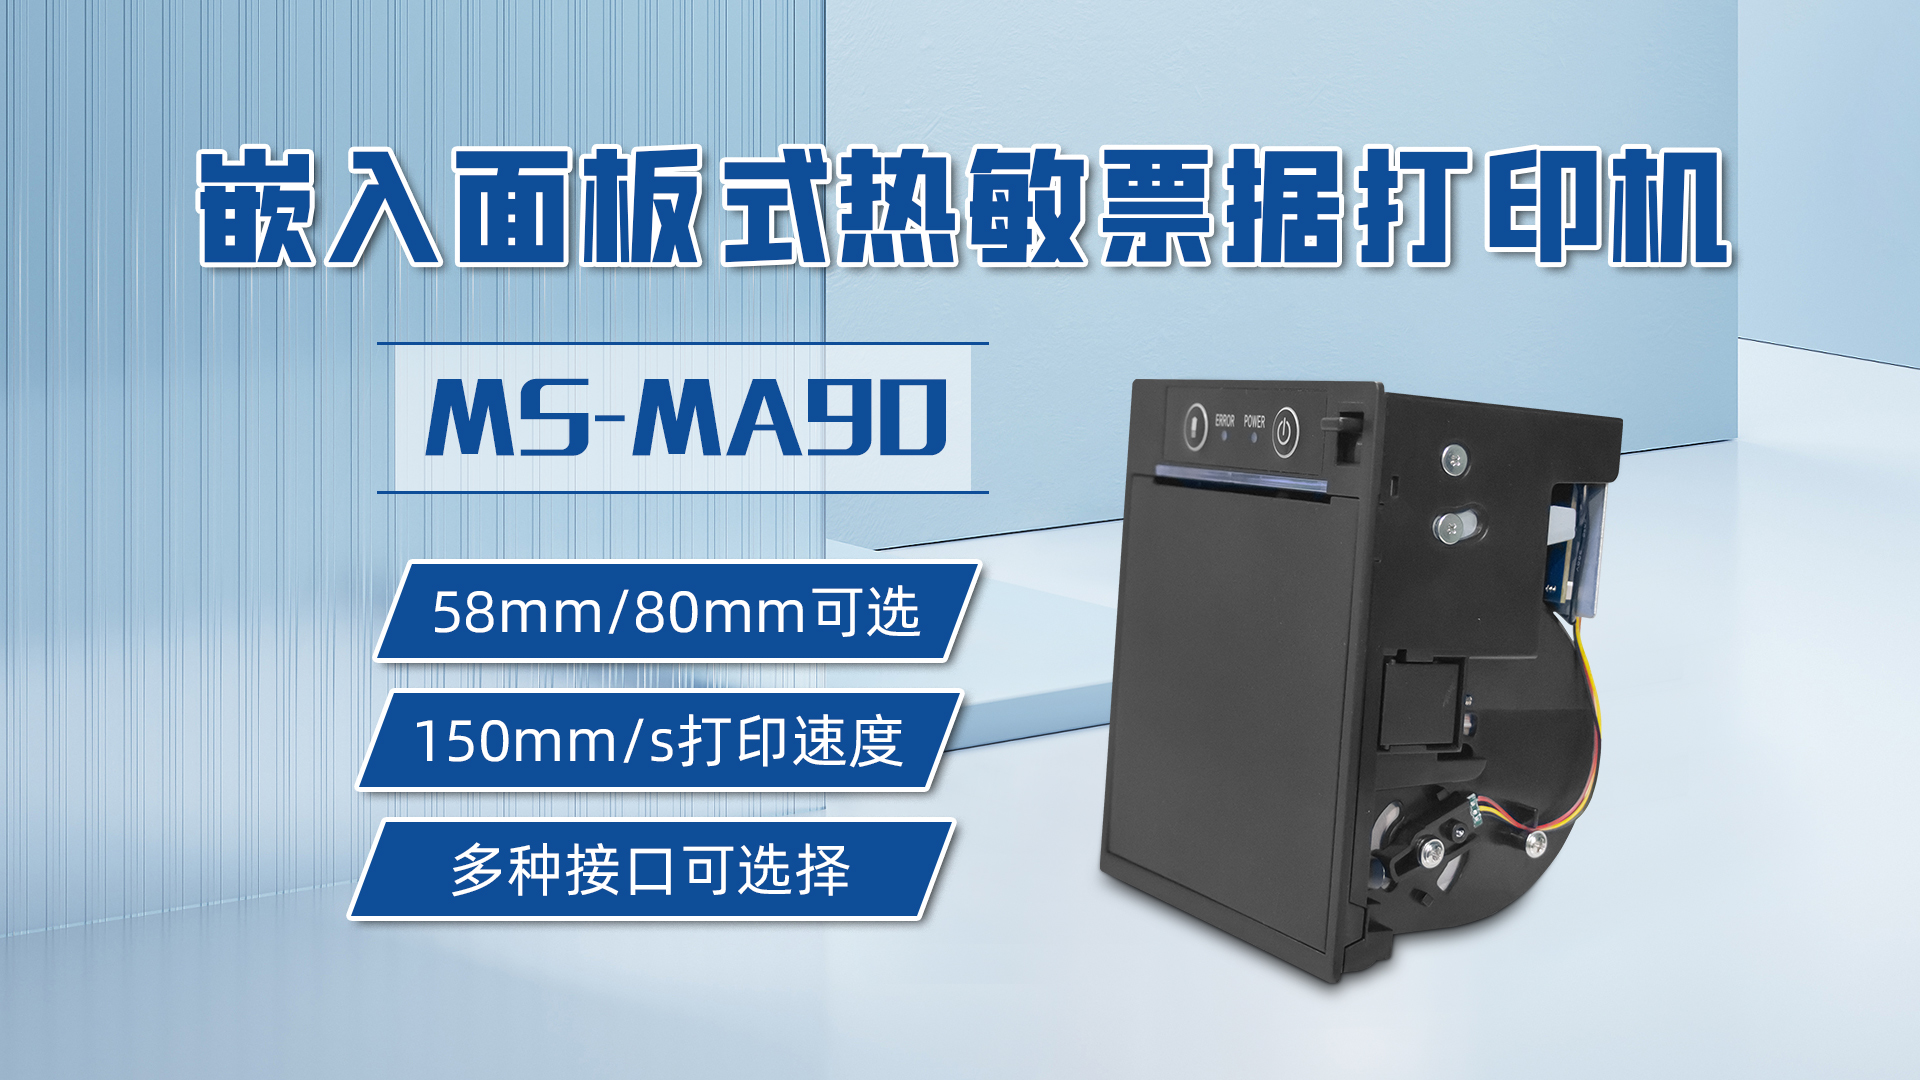 58mm和80mm打印票据可选的打印机MS-MA90，具有多种接口可选择